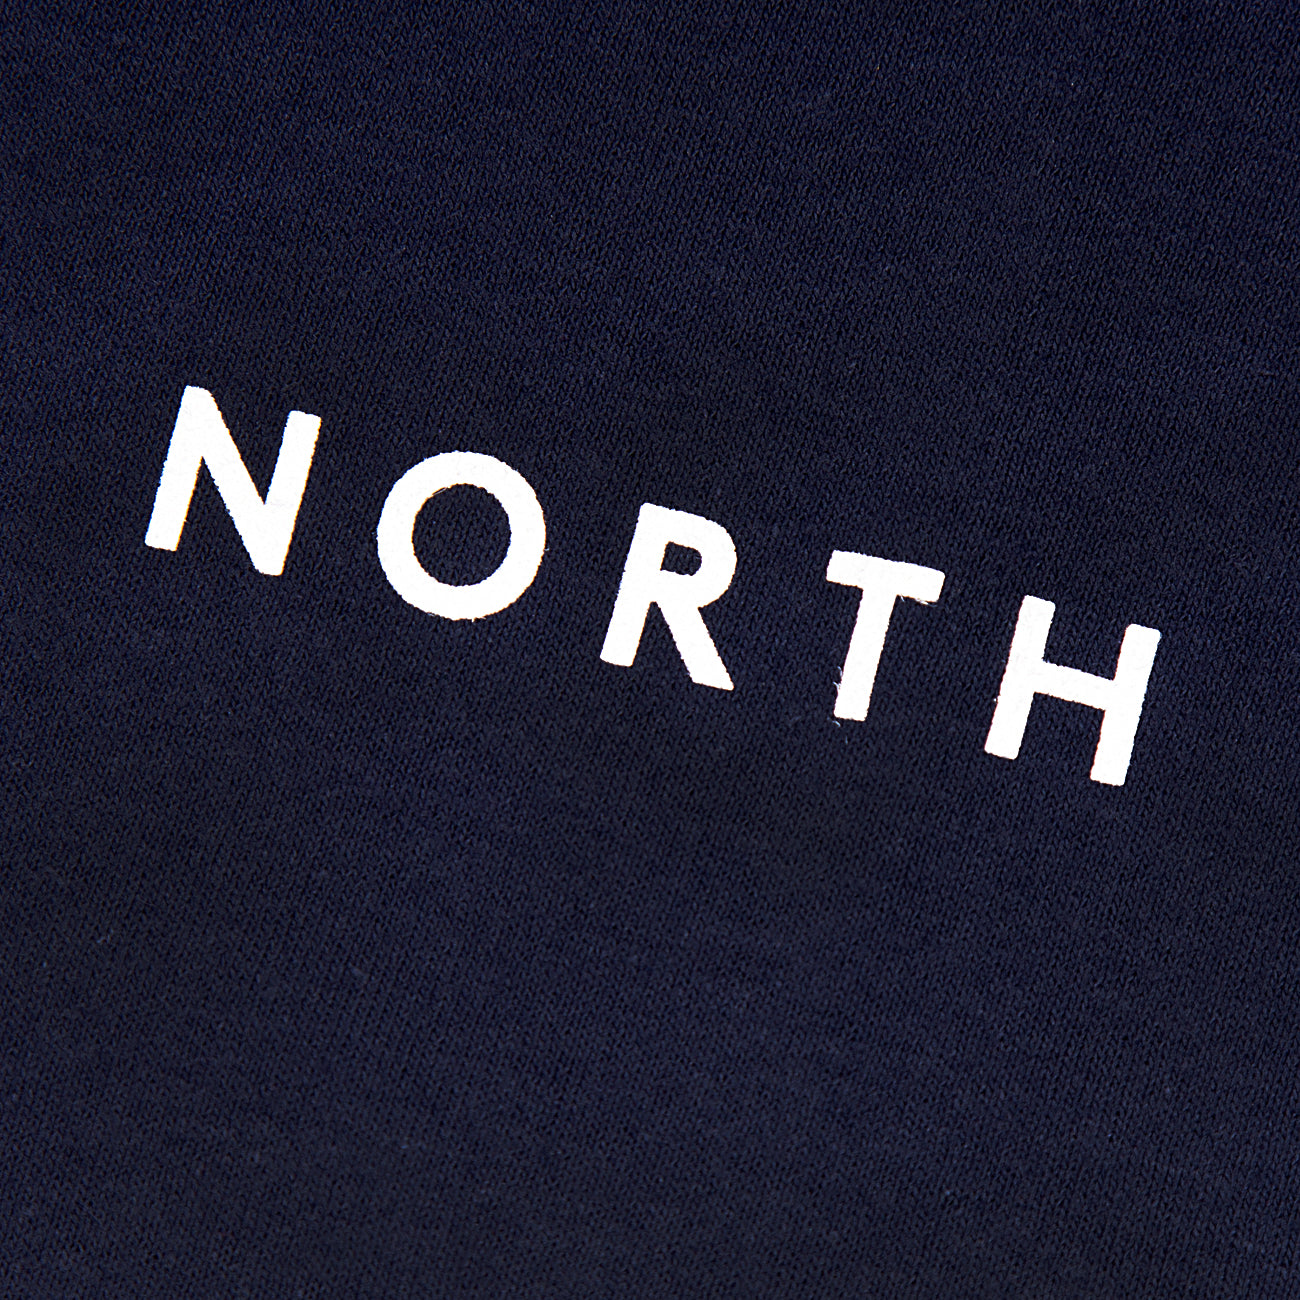 North Film Star Logo T-Shirt - Navy/White